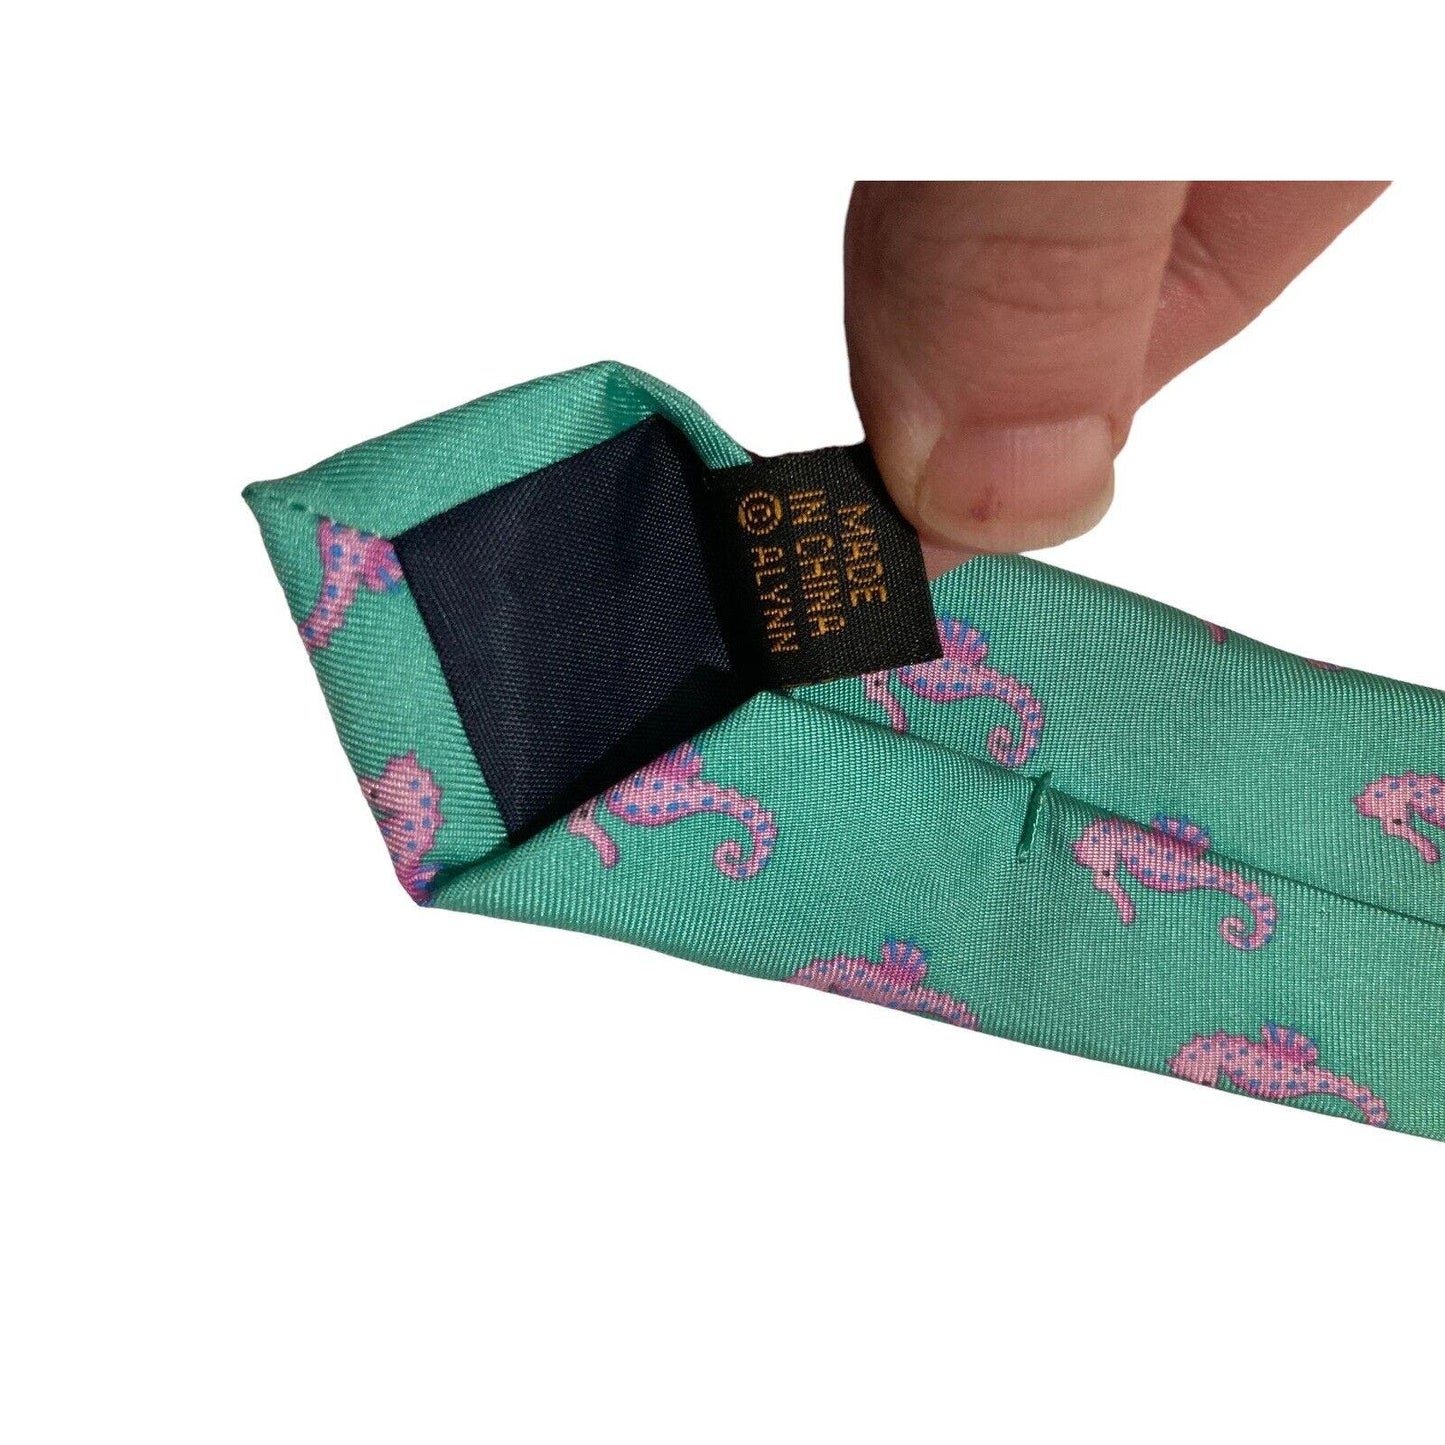 Alynn Neckwear Seahorse Green Pink Vintage Novelty Necktie 100% Silk